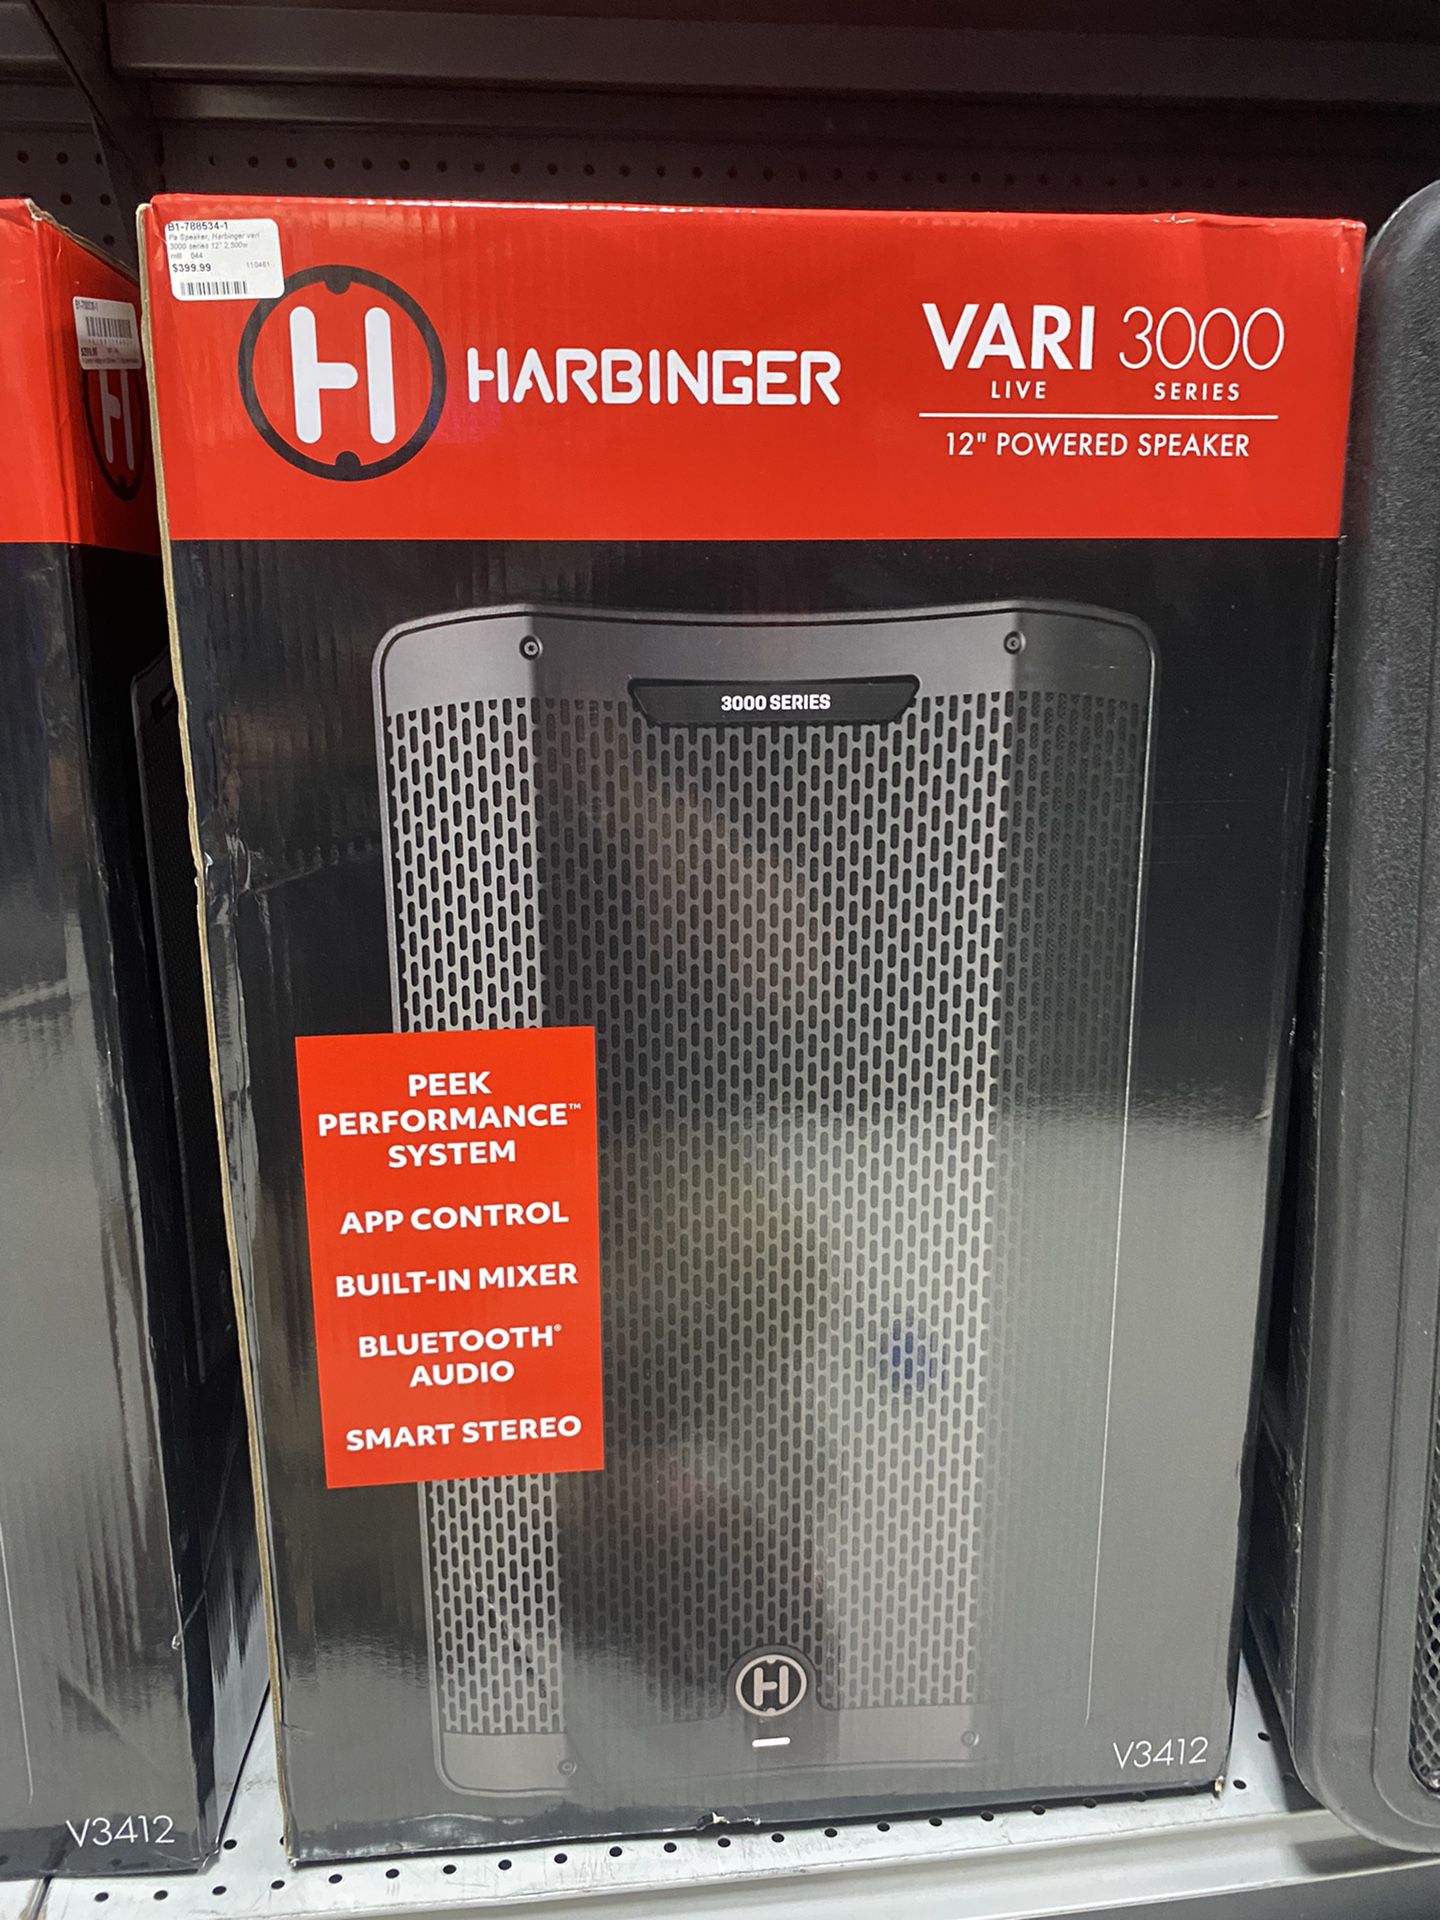 Brand New Sealed Harbinger Vari Live 3000 Series 12” Powered Speaker’s